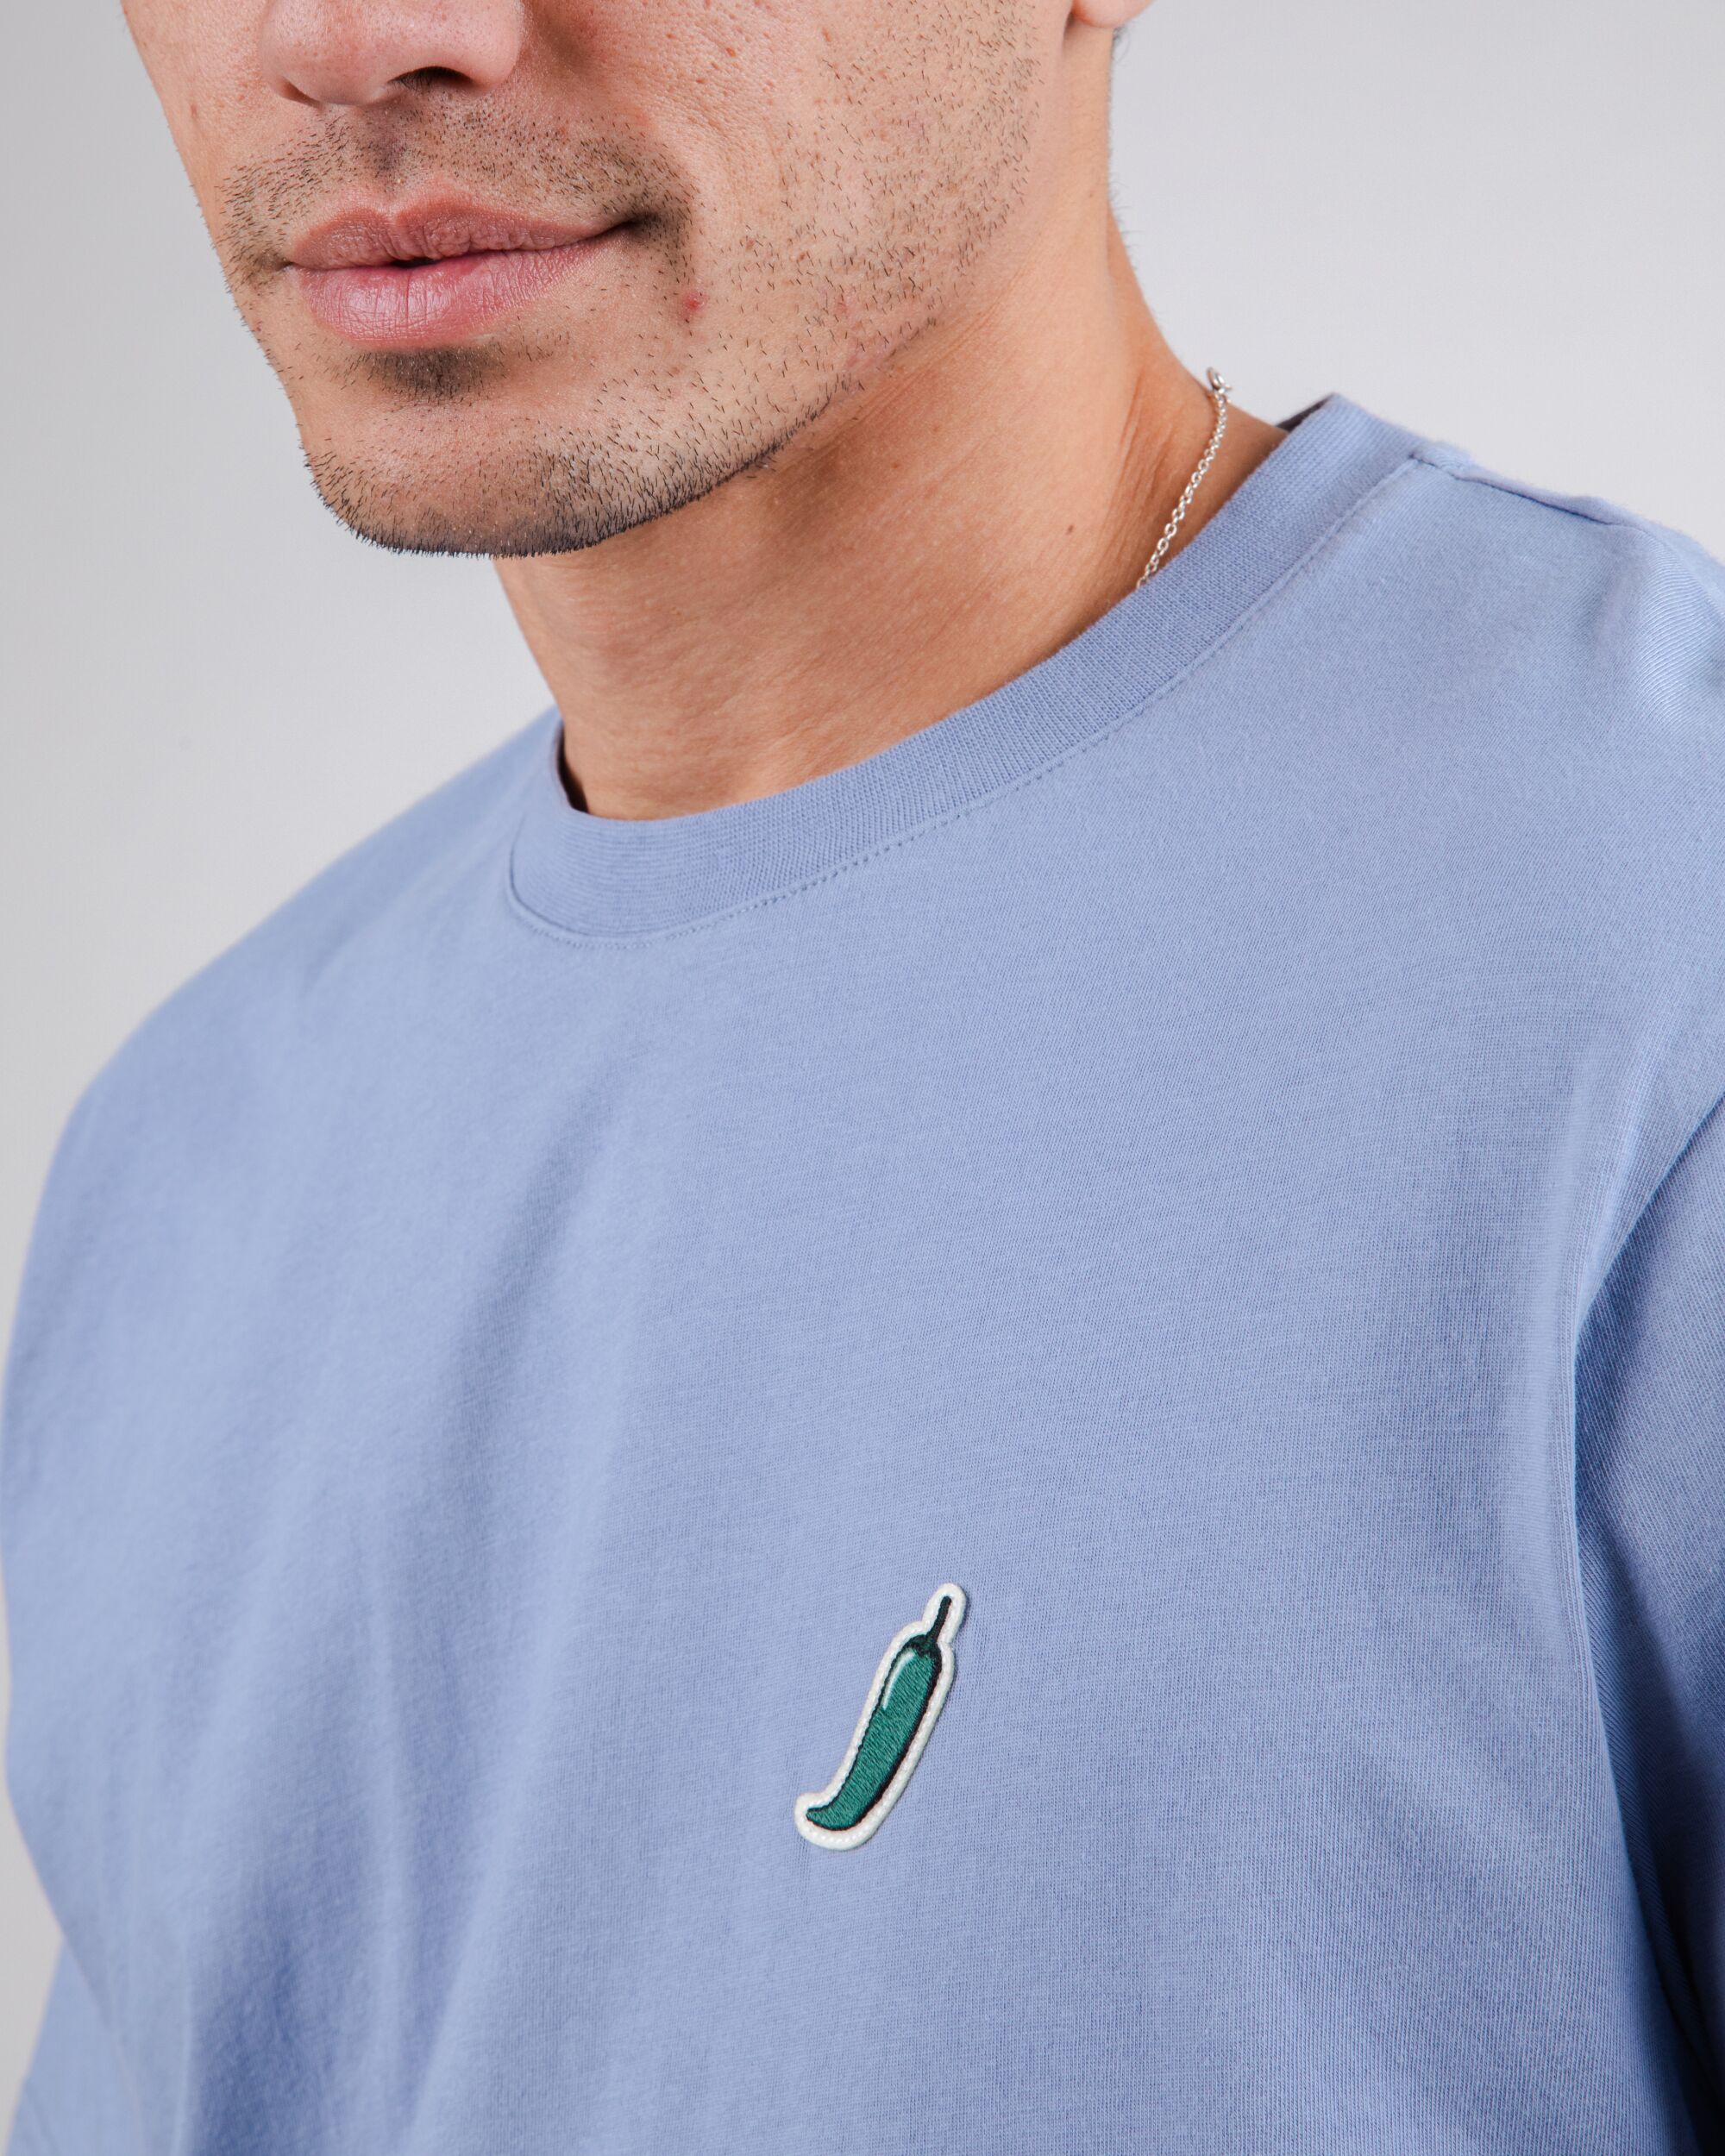 Blaues T-Shirt Green Chilli aus 100% Bio-Baumwolle von Brava Fabrics